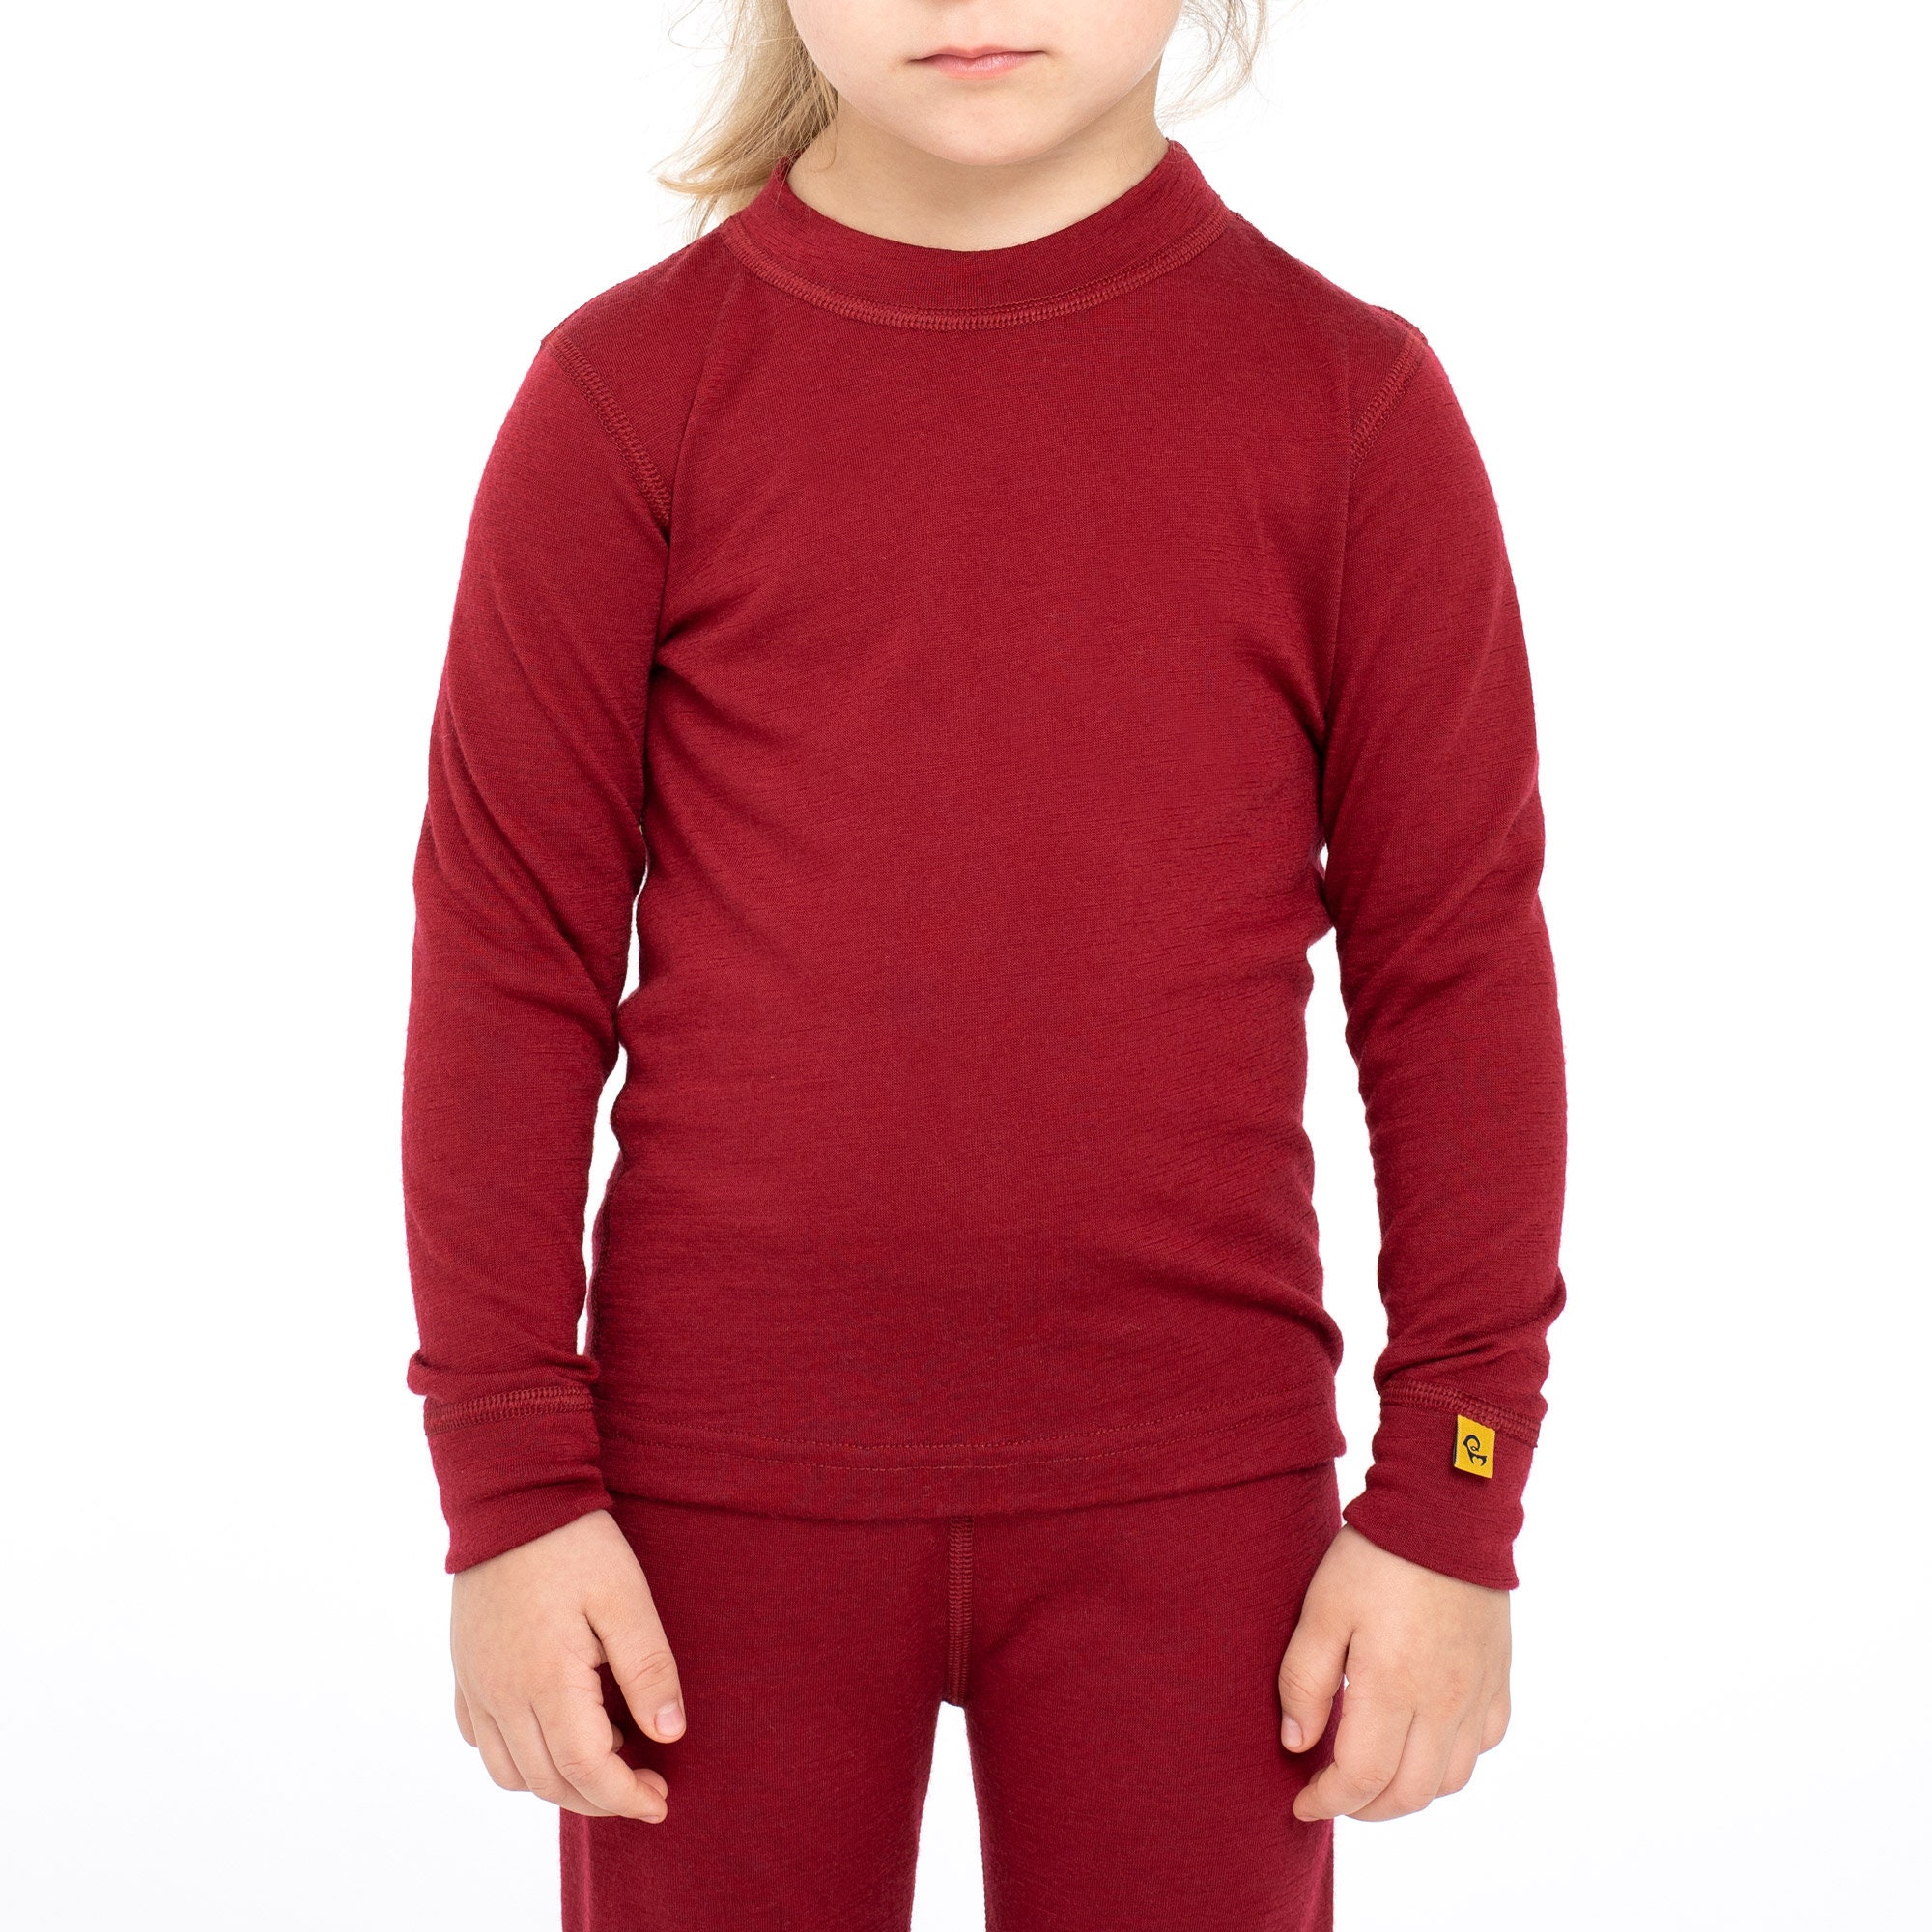  MERIWOOL Kids Unisex Long Sleeve Shirt Thermal